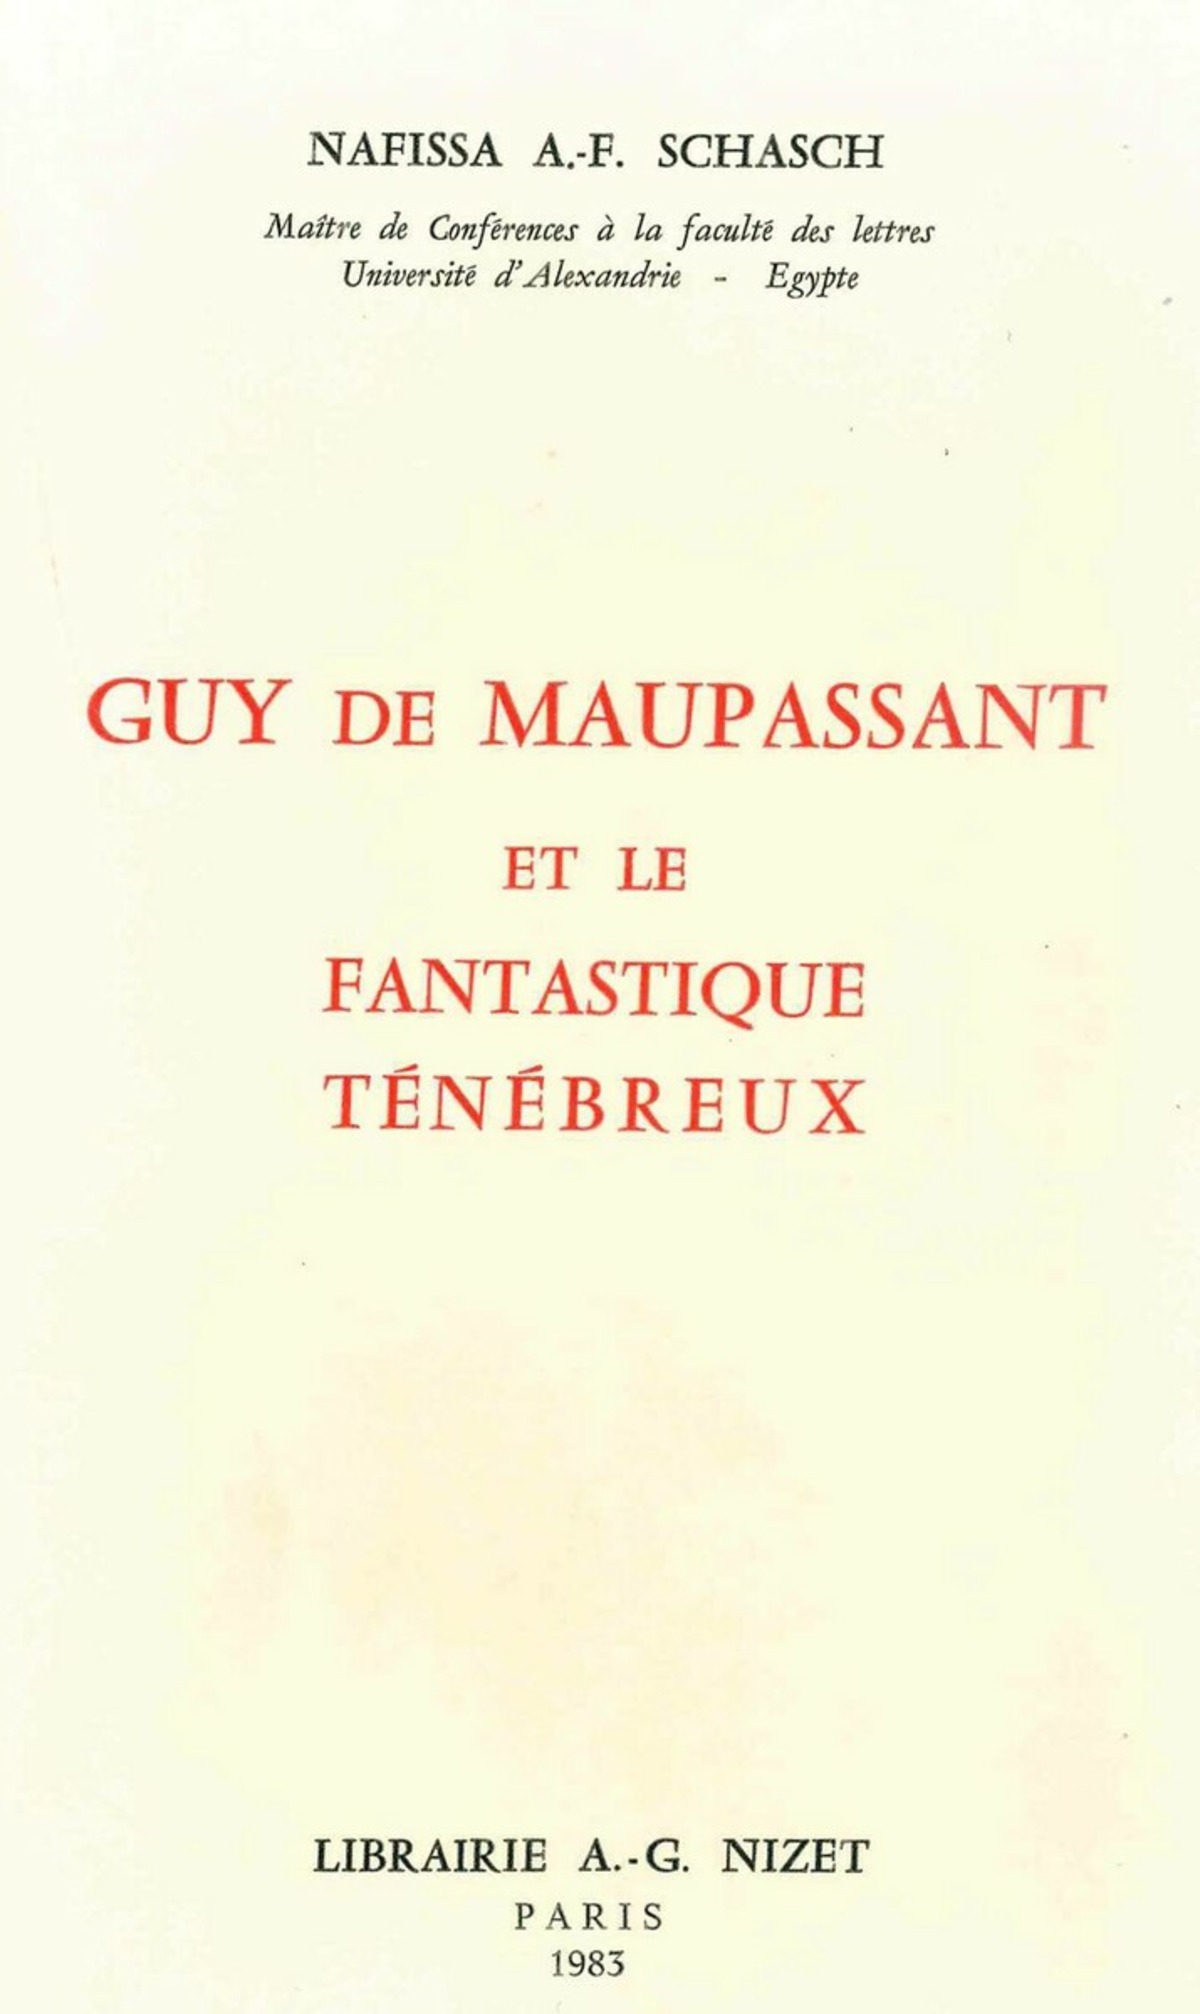 Guy de Maupassant et le fantastique ténébreux